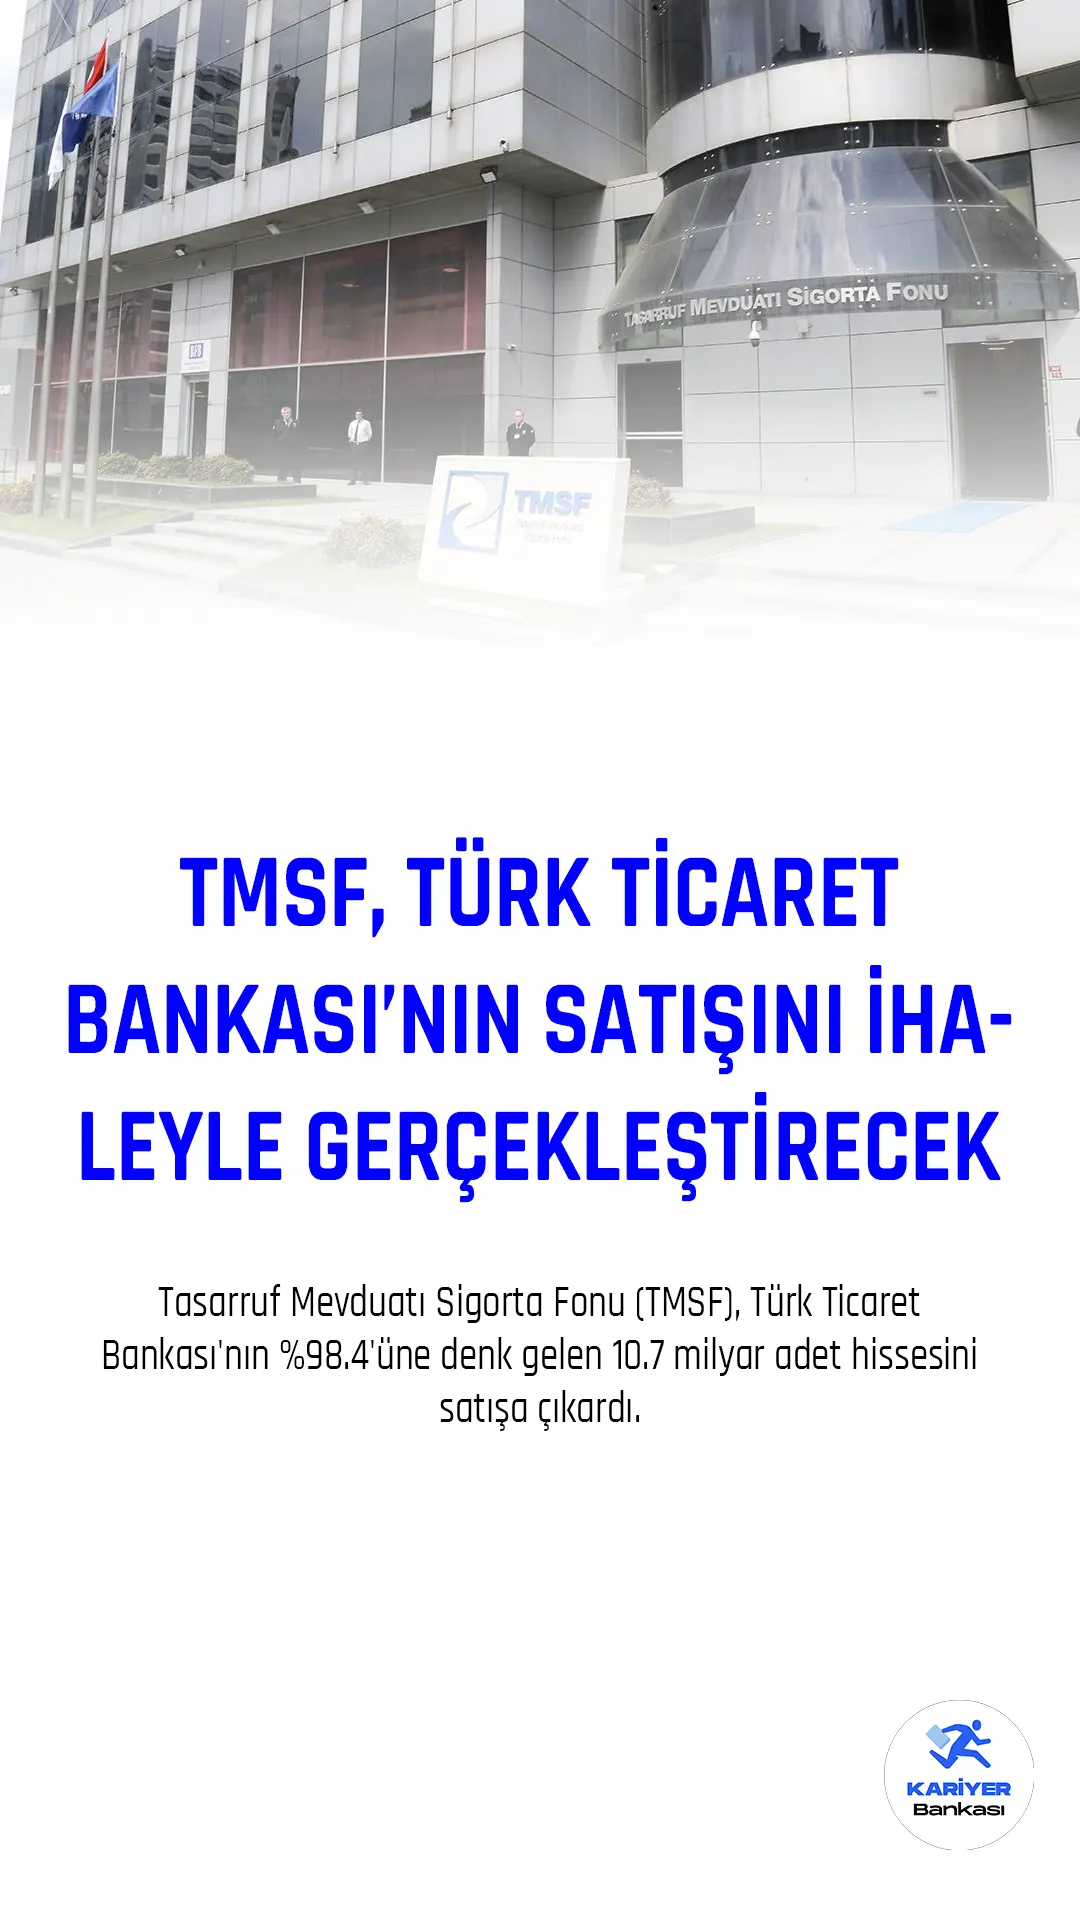 Tasarruf Mevduatı Sigorta Fonu (TMSF), Türk Ticaret Bankası'nın %98.4'üne denk gelen 10.7 milyar adet hissesini satışa çıkardı.